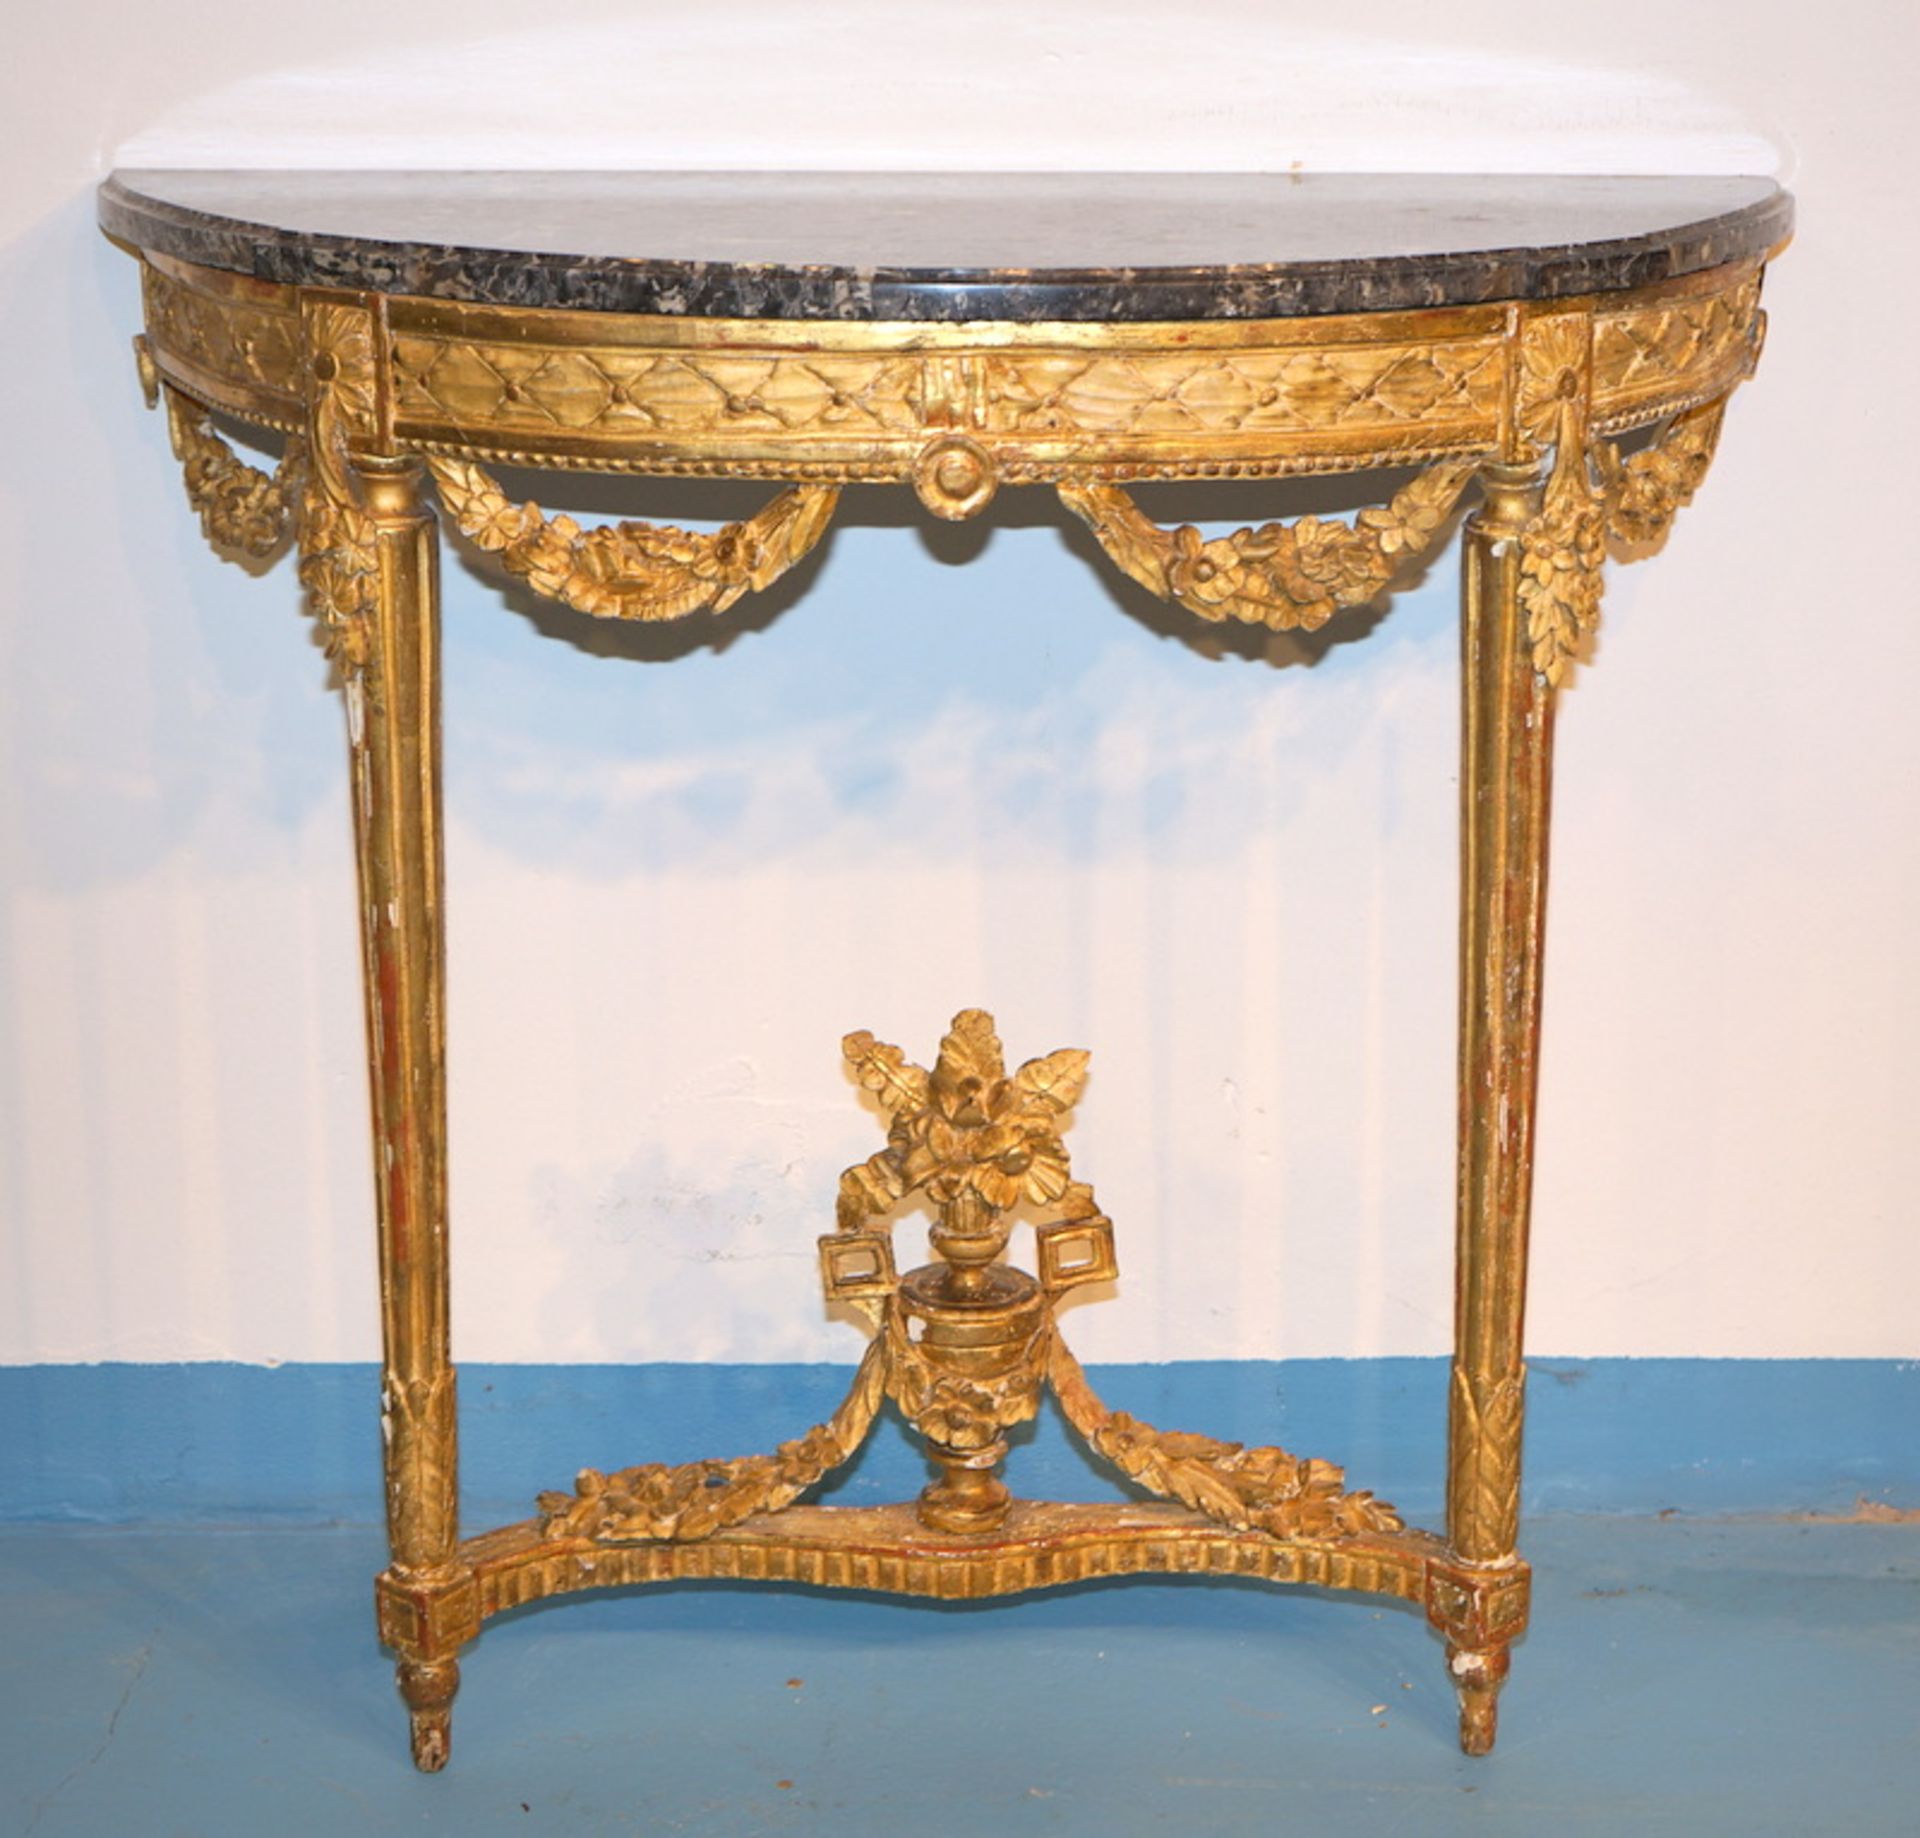 Konsole Louis XVI.,Linde geschnitzt gefasst vergoldet, reich geschnitzte Zarge und Girlandenfestons,